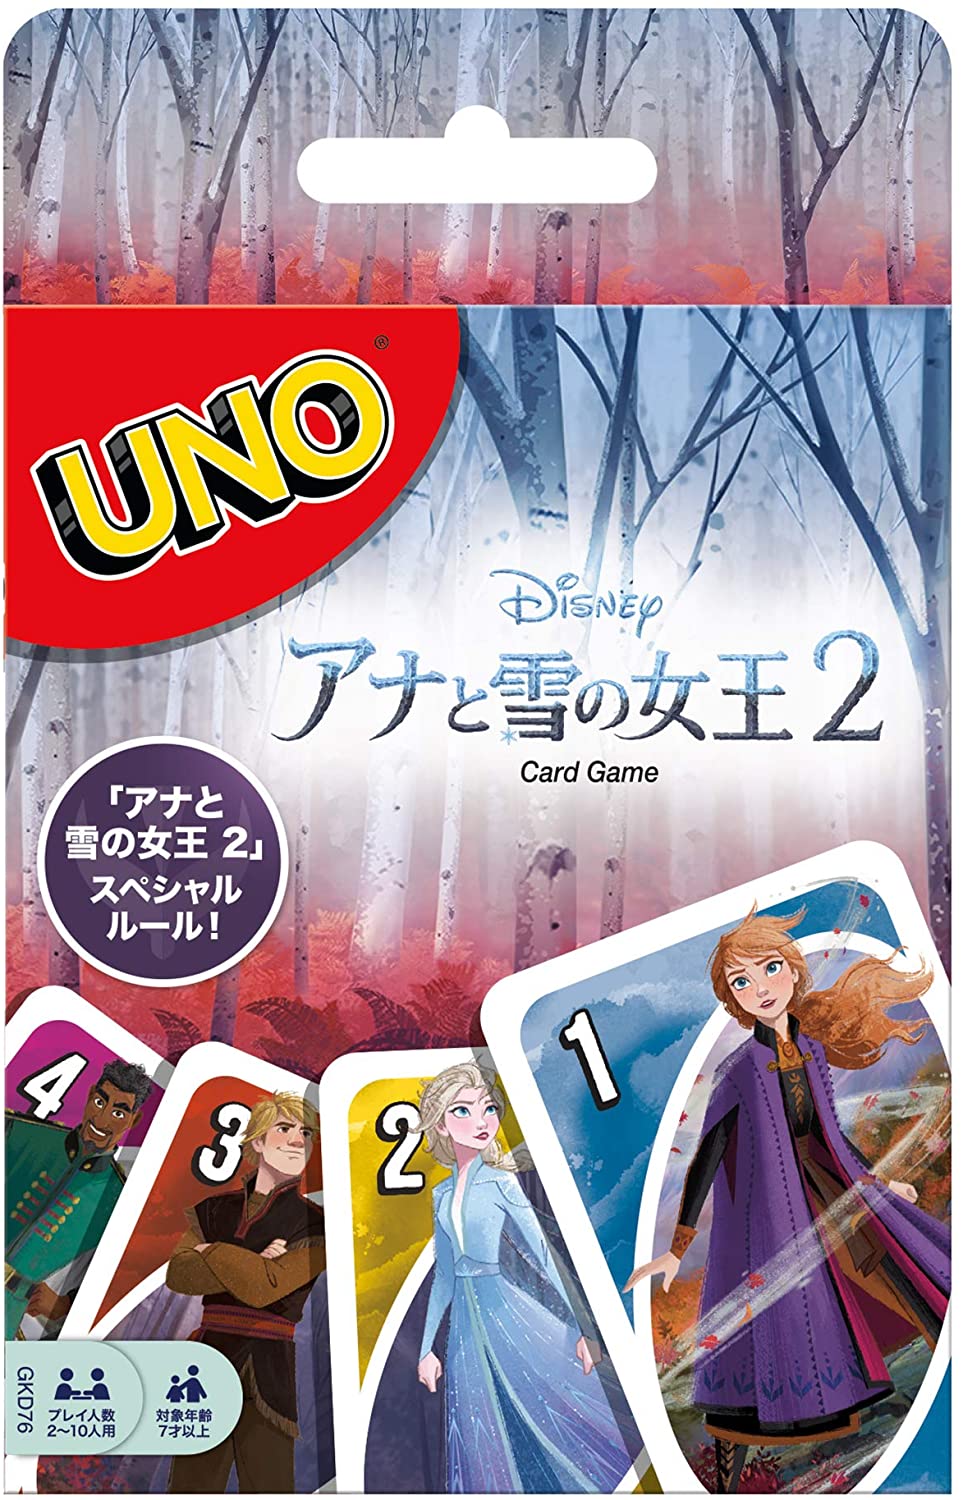 ウノ アナと雪の女王2 UNO FROZEN2 【スペシャルルールカード フォース・オブ・ネイチャー付き】GKD76